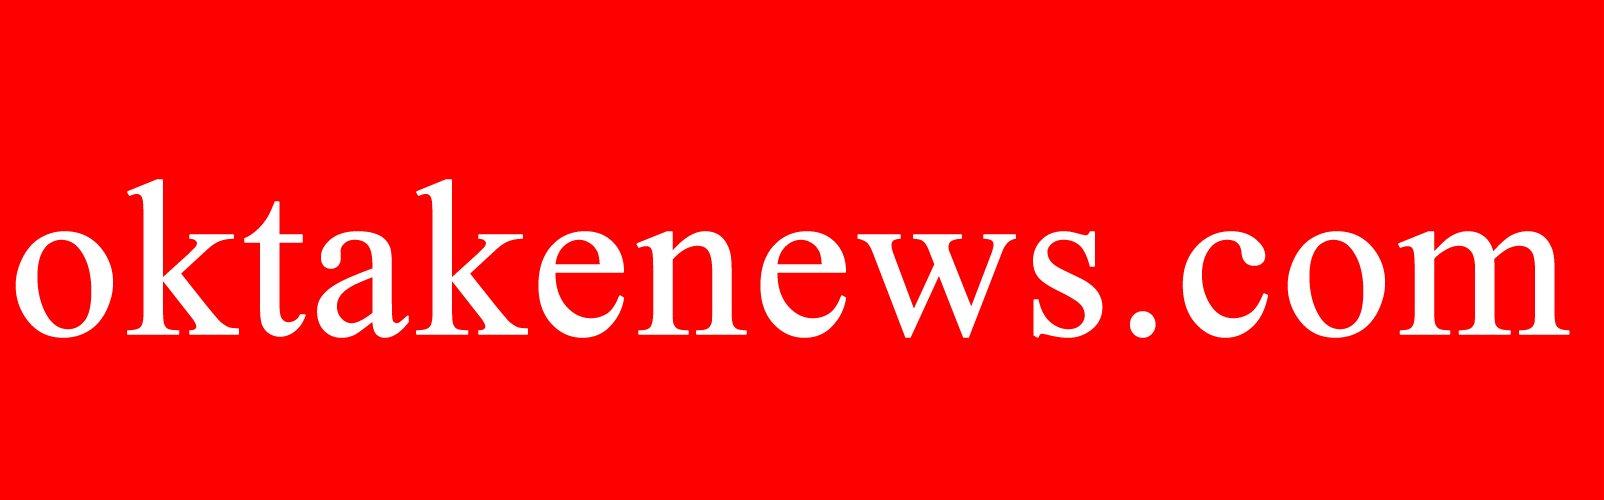 Oktakenews | Tamil News Paper | Tamil News Online | Politics News | Cinema News | Trending News | Sports News | Health News | Entertainment News | Tamil News Today | Tamil News Live | ok take news